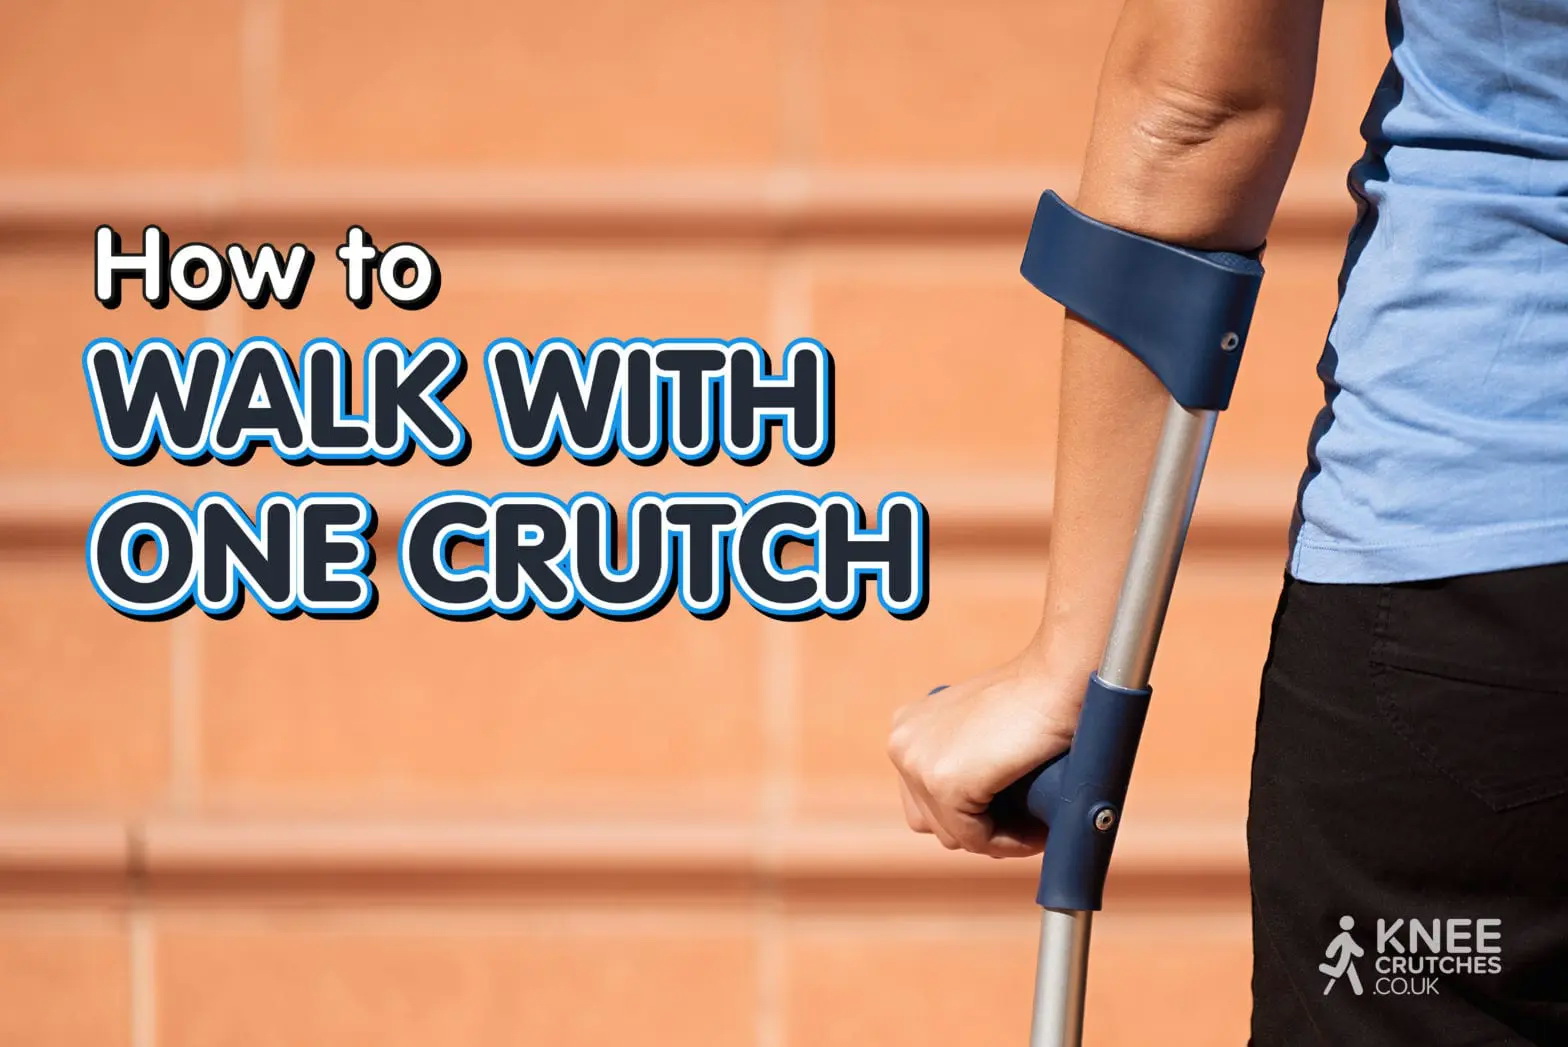 How-to-Walk-with-One-Crutch-1568x1047.jpg